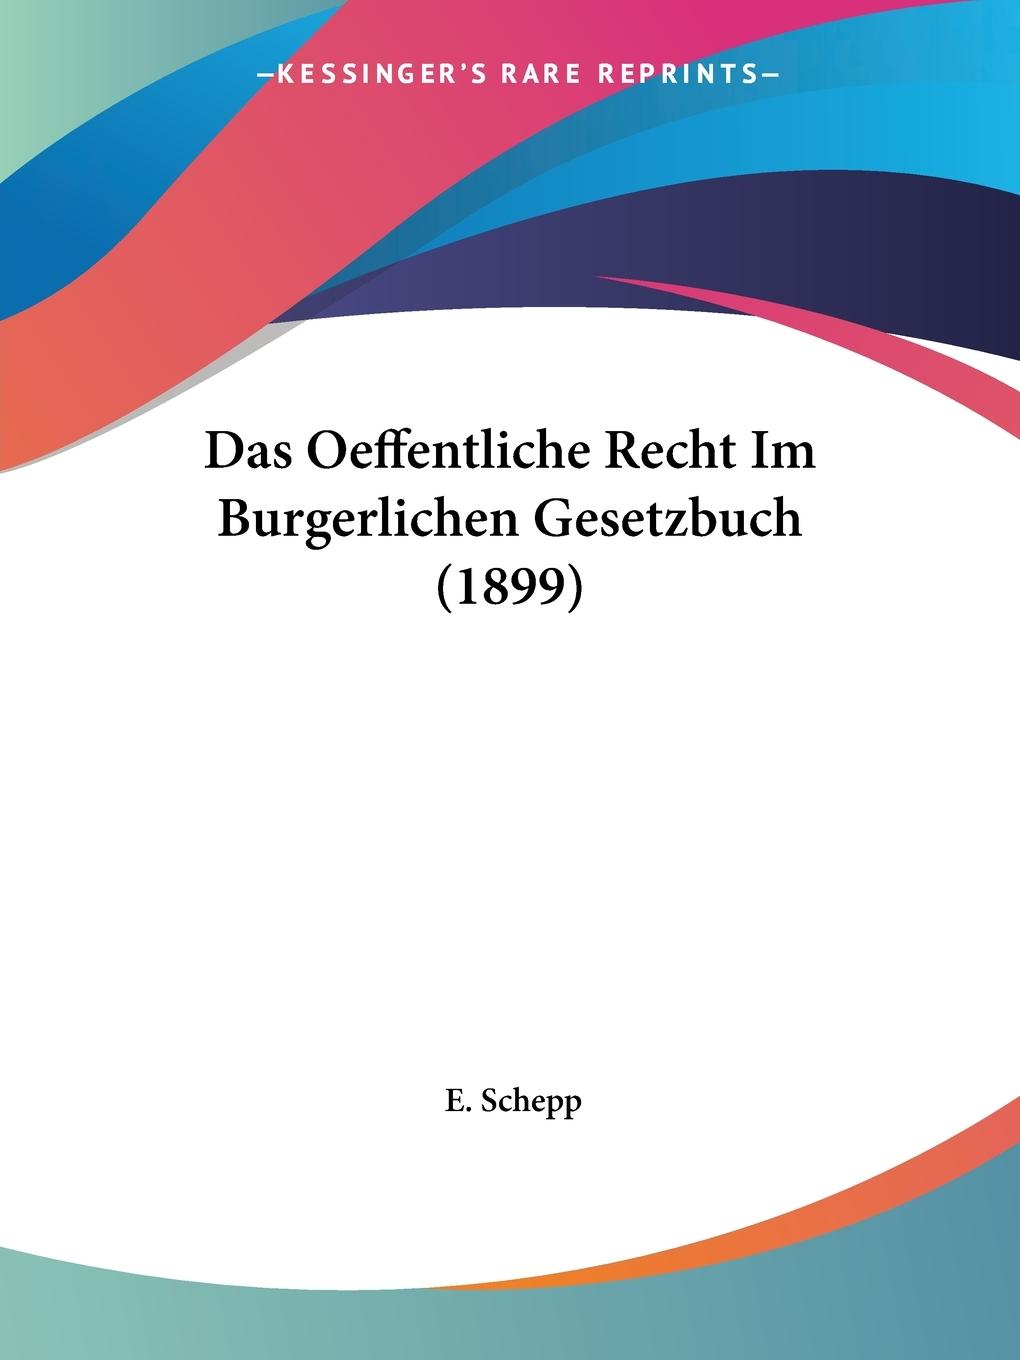 Das Oeffentliche Recht Im Burgerlichen Gesetzbuch (1899) - Schepp, E.